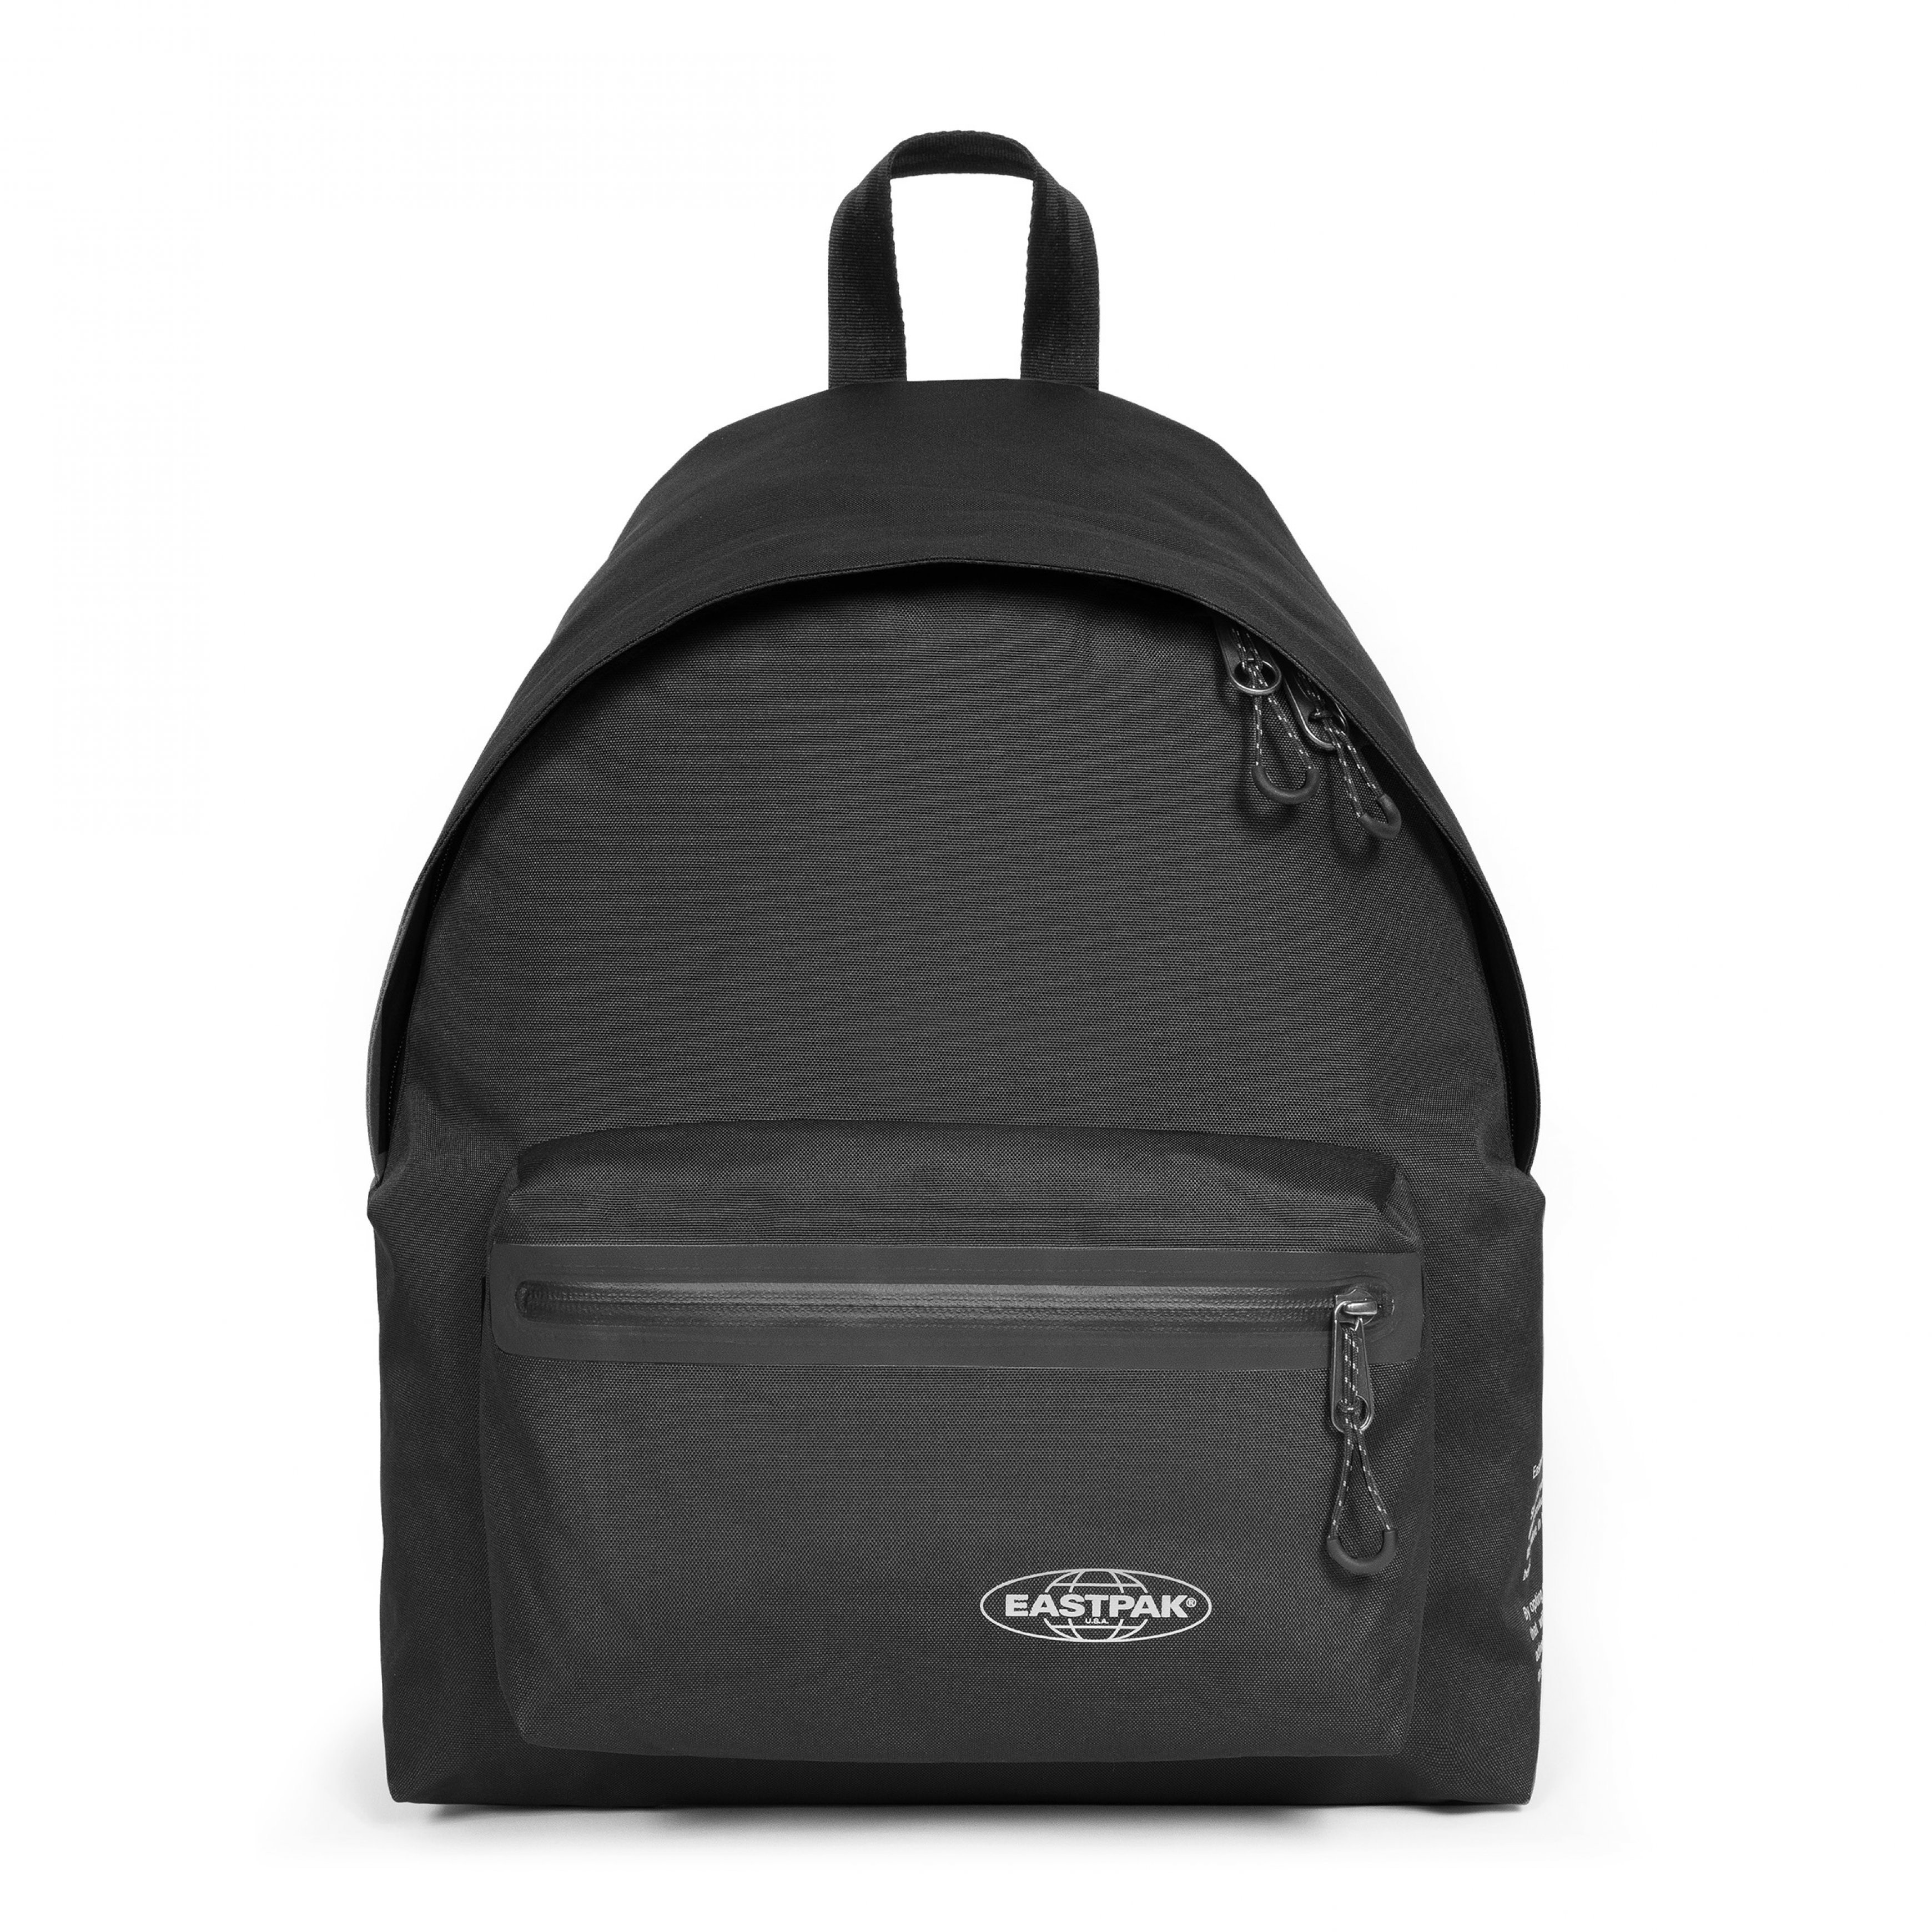 Eastpak - Padded Pak'r Storm Black backpack, Black, large image number 0